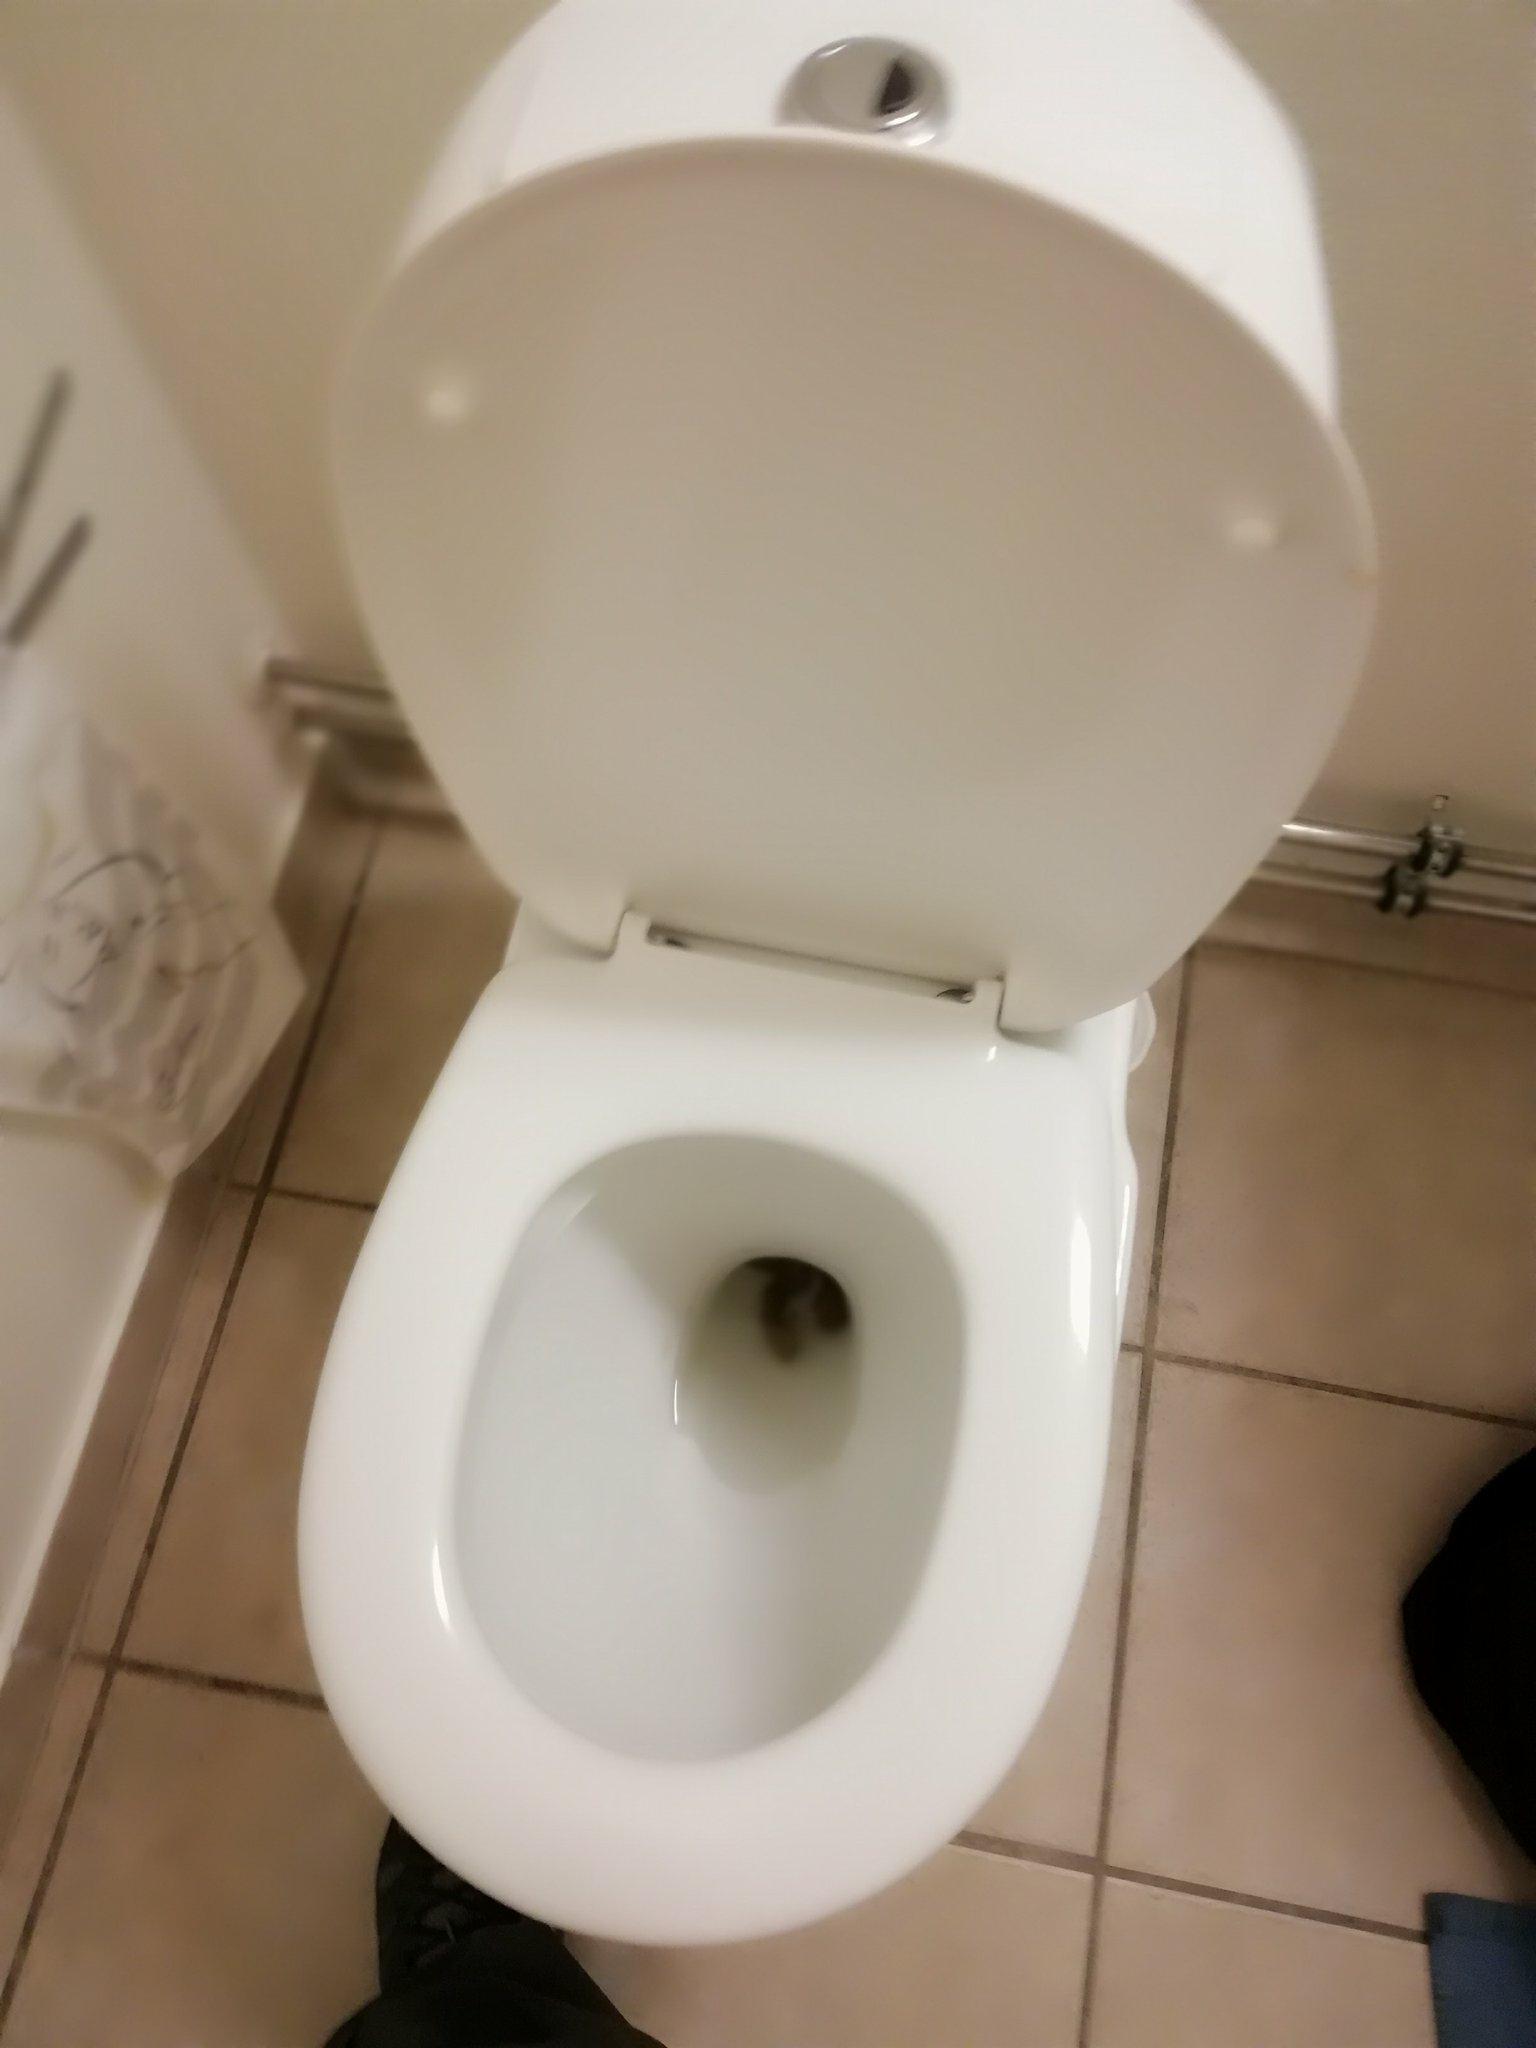 me poop on public toilet